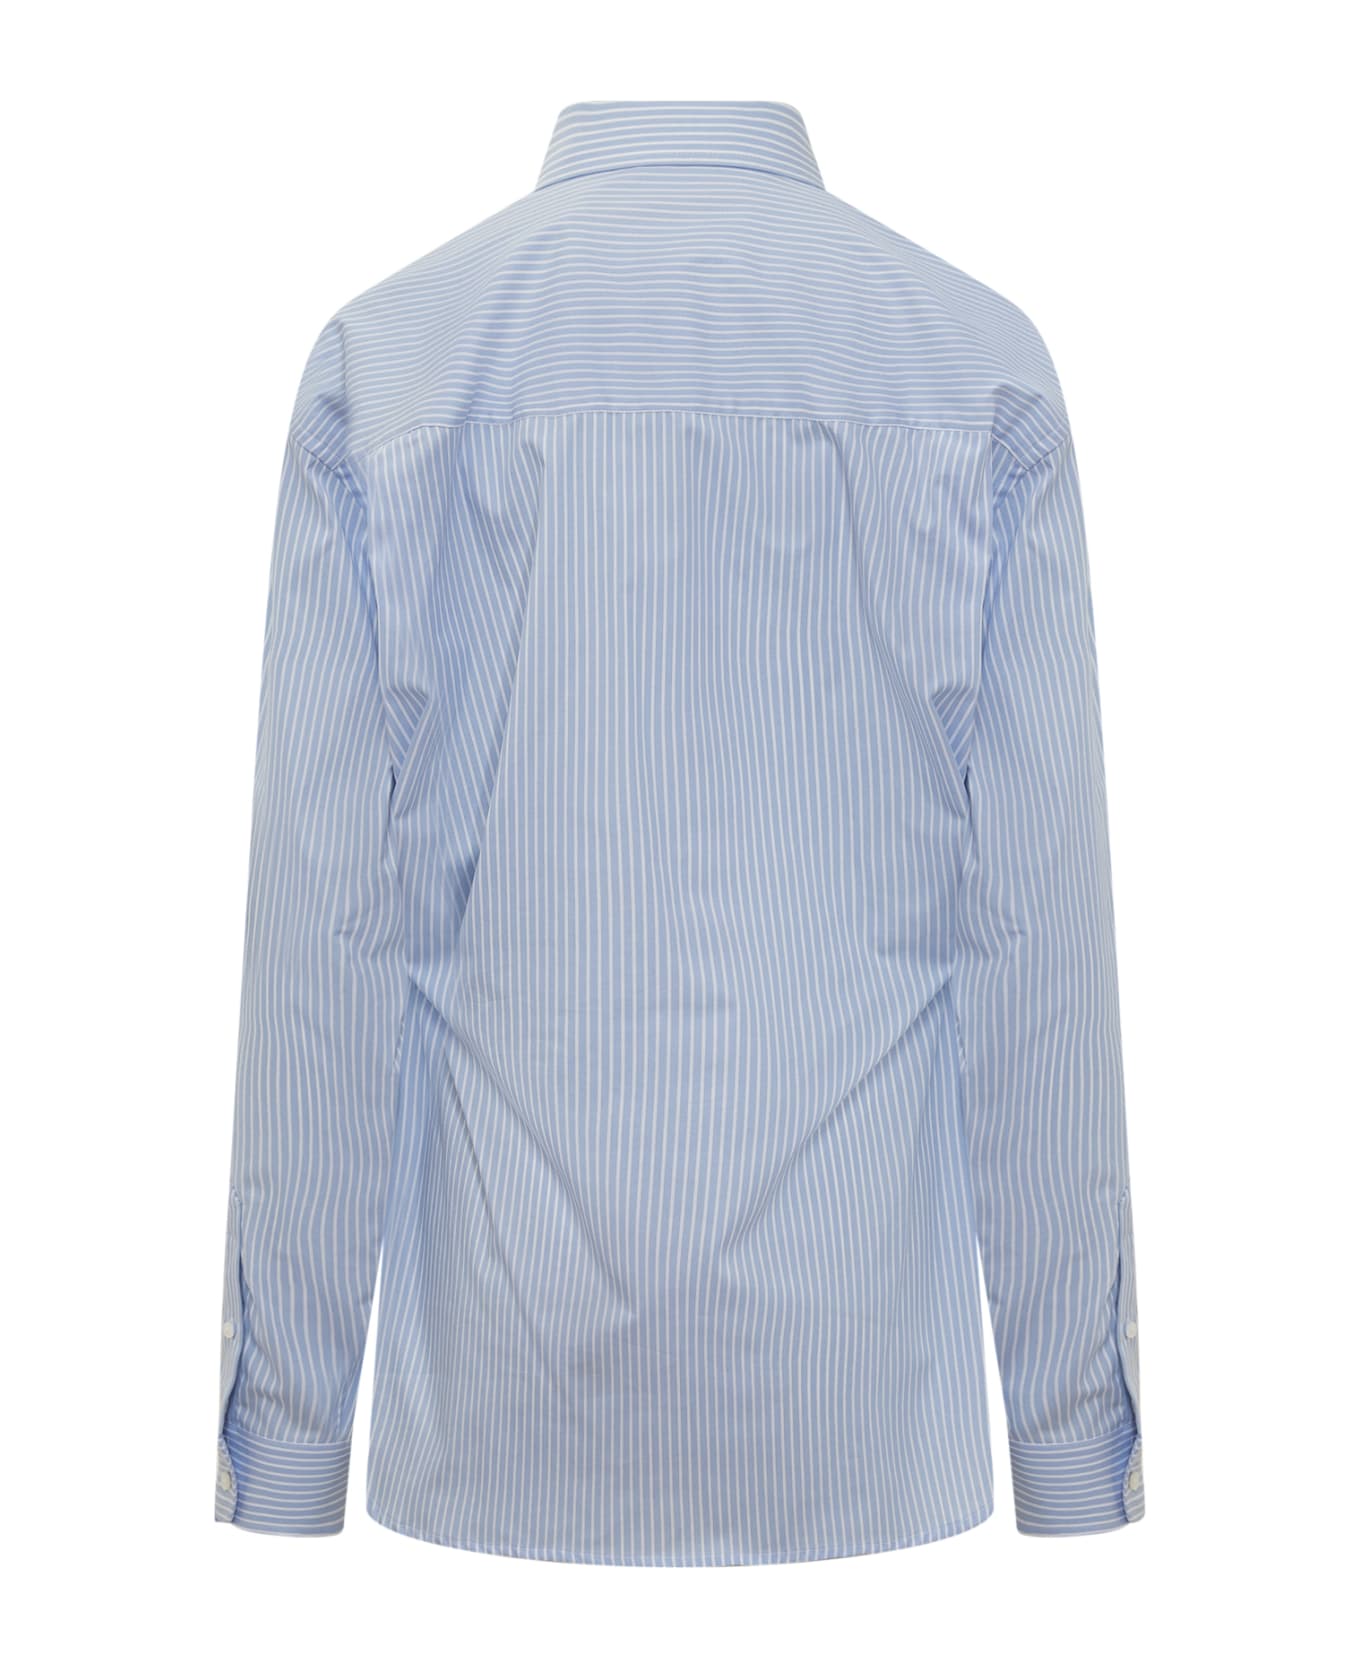 DARKPARK Anne Tailored Shirt - BLUE/WHITE シャツ